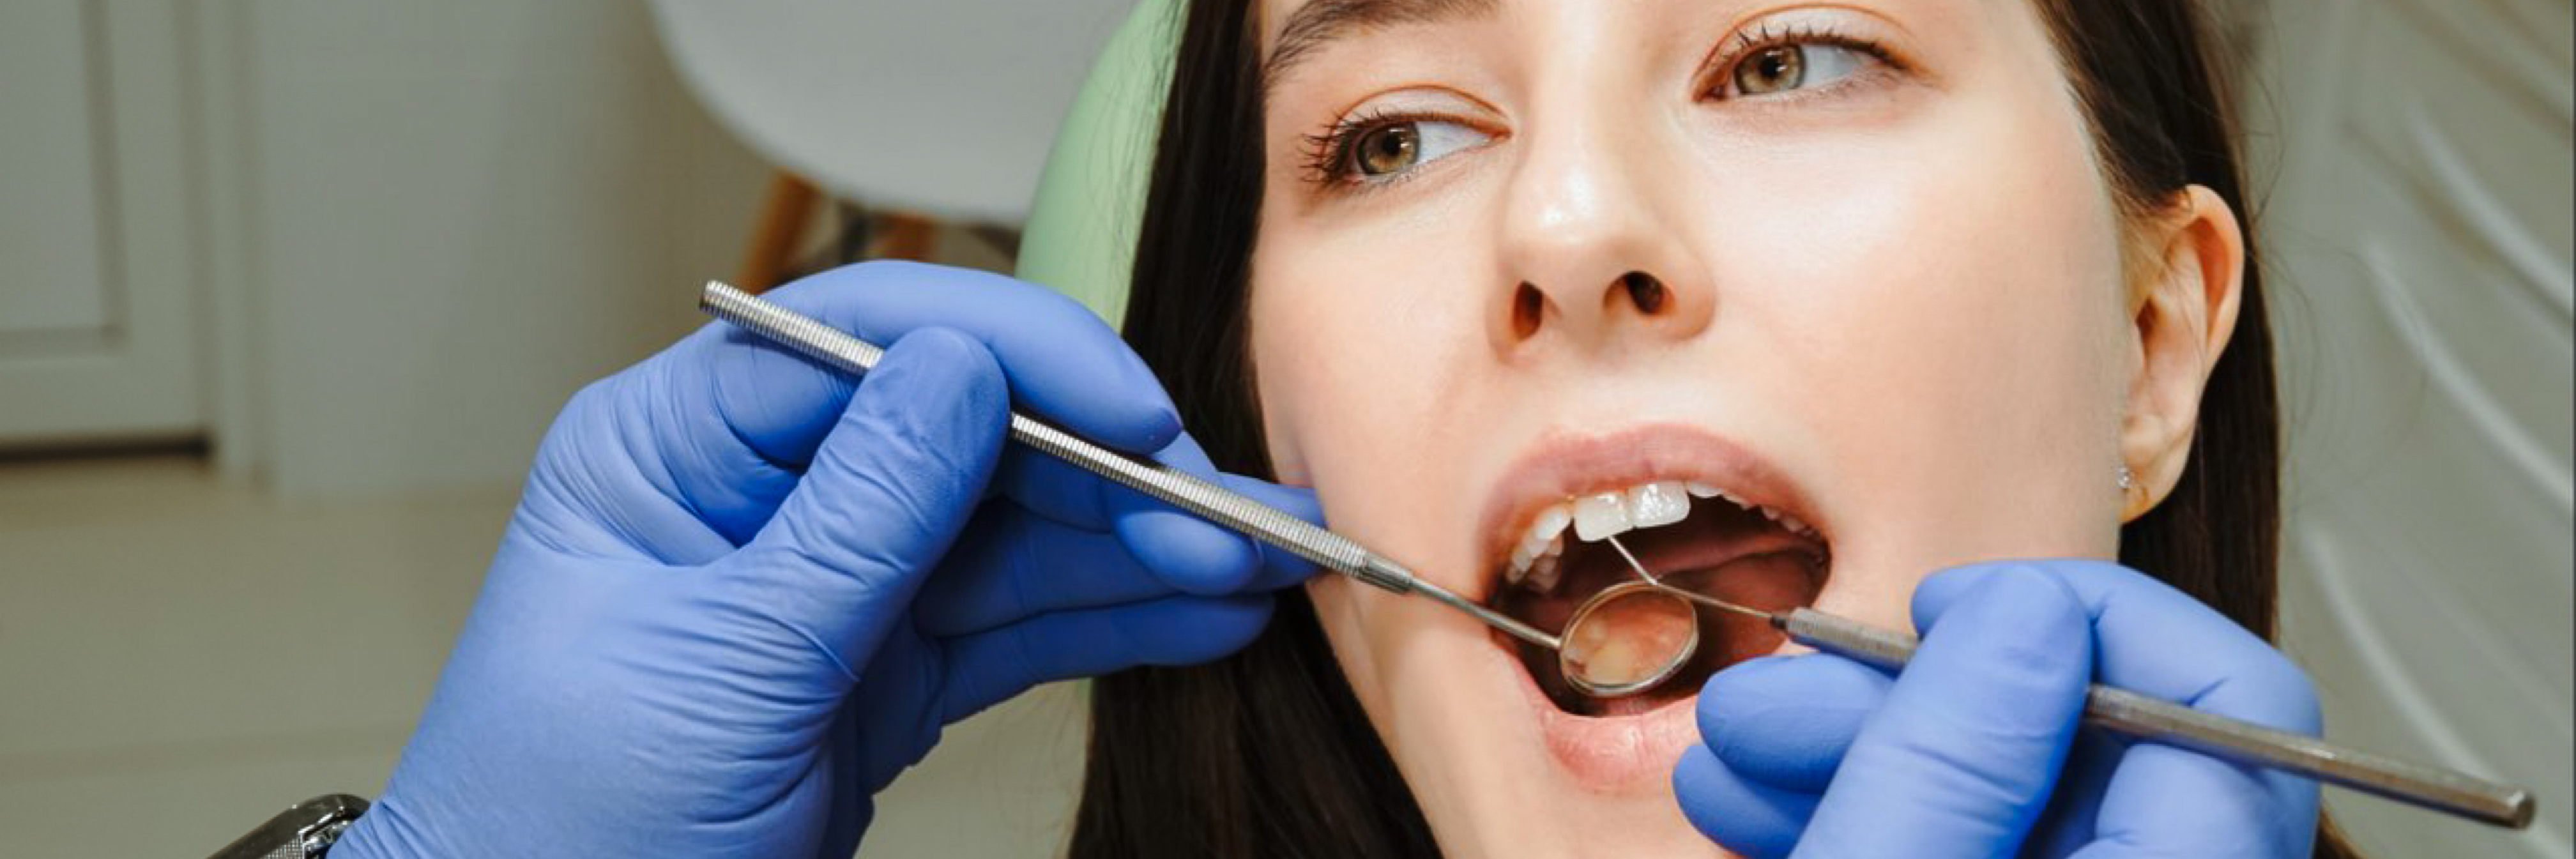 Киста зуба: лечение, симптомы и причины возникновения